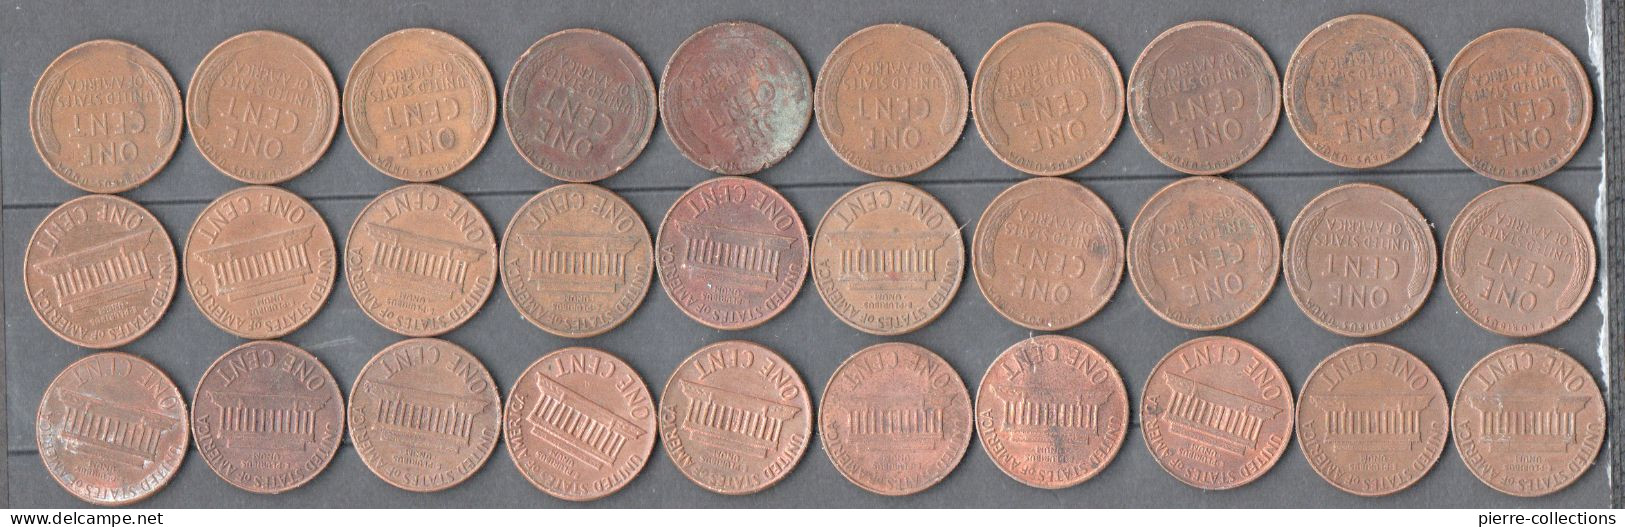 Etats-Unis - Lot De 30 Monnaies Différentes - One Cent - Abraham Lincoln - Other - America